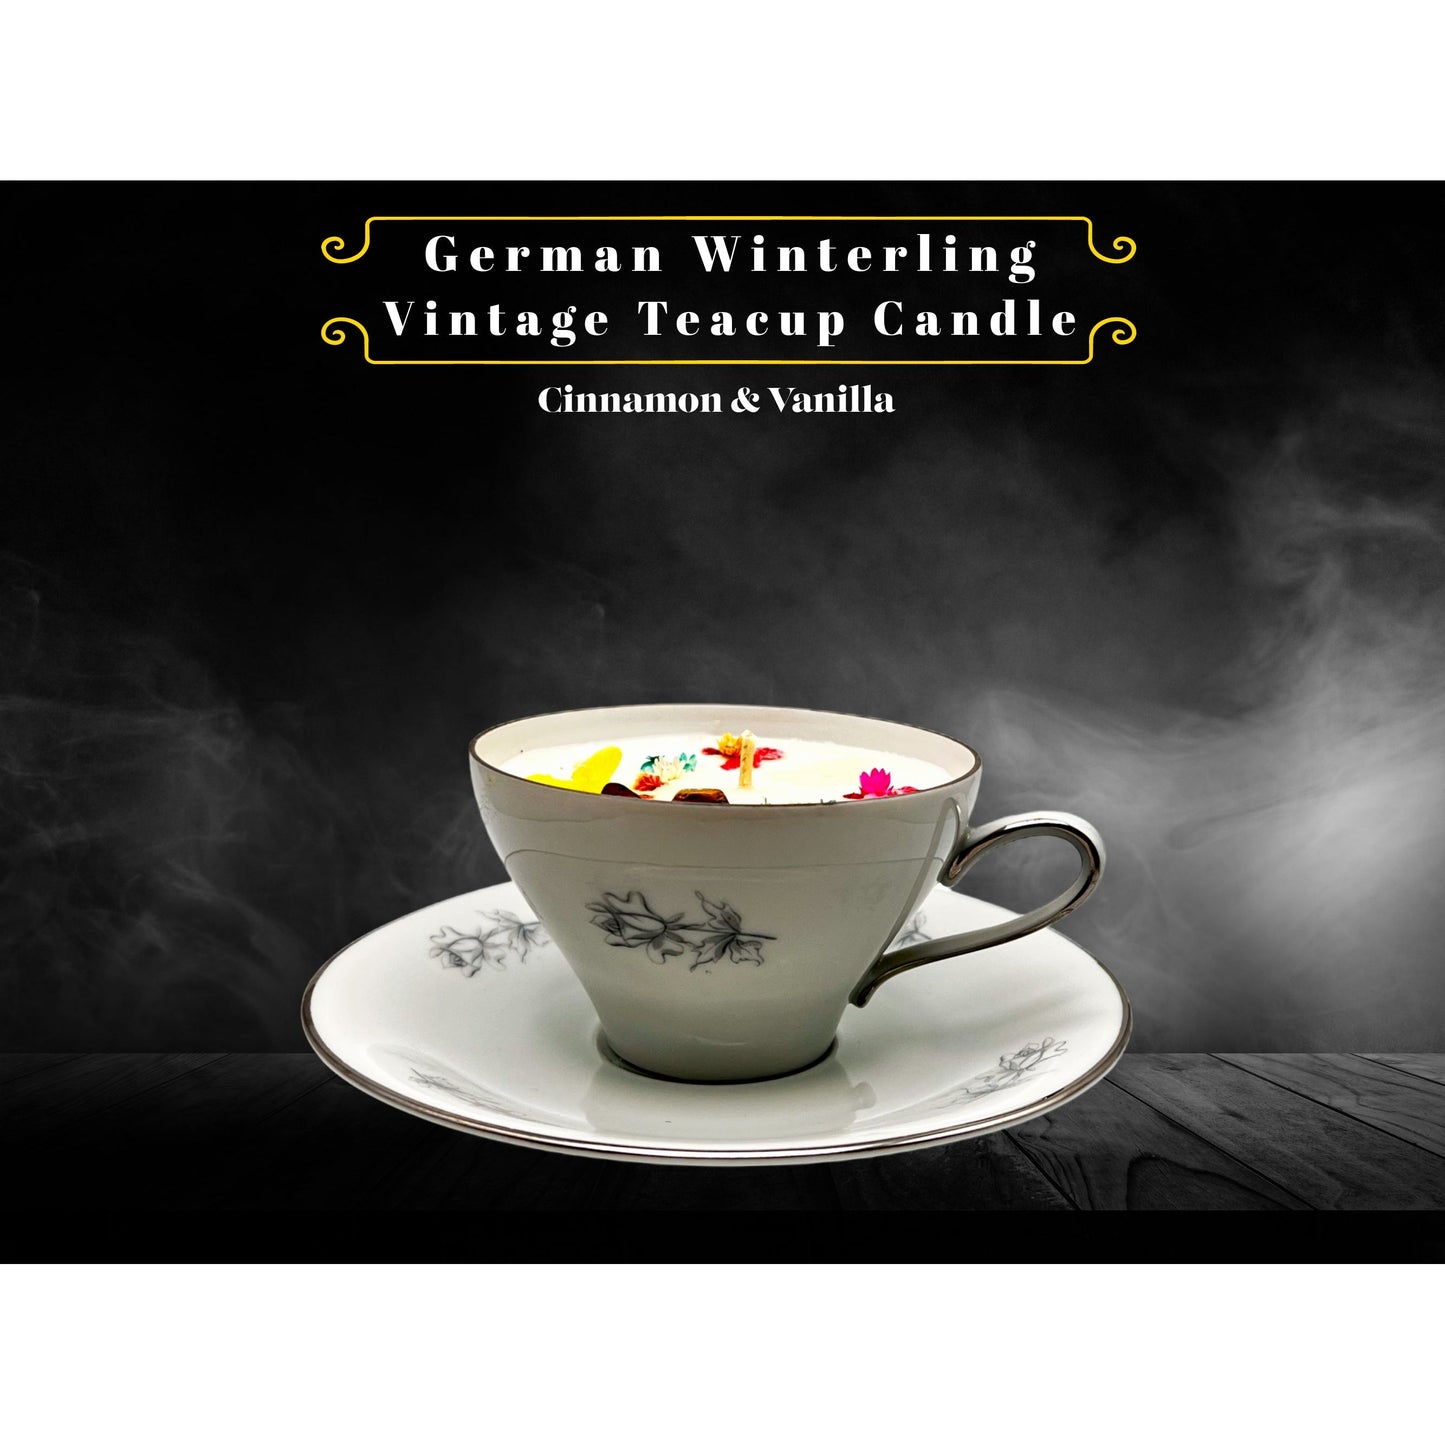 German Winterling Vintage Teacup Candle